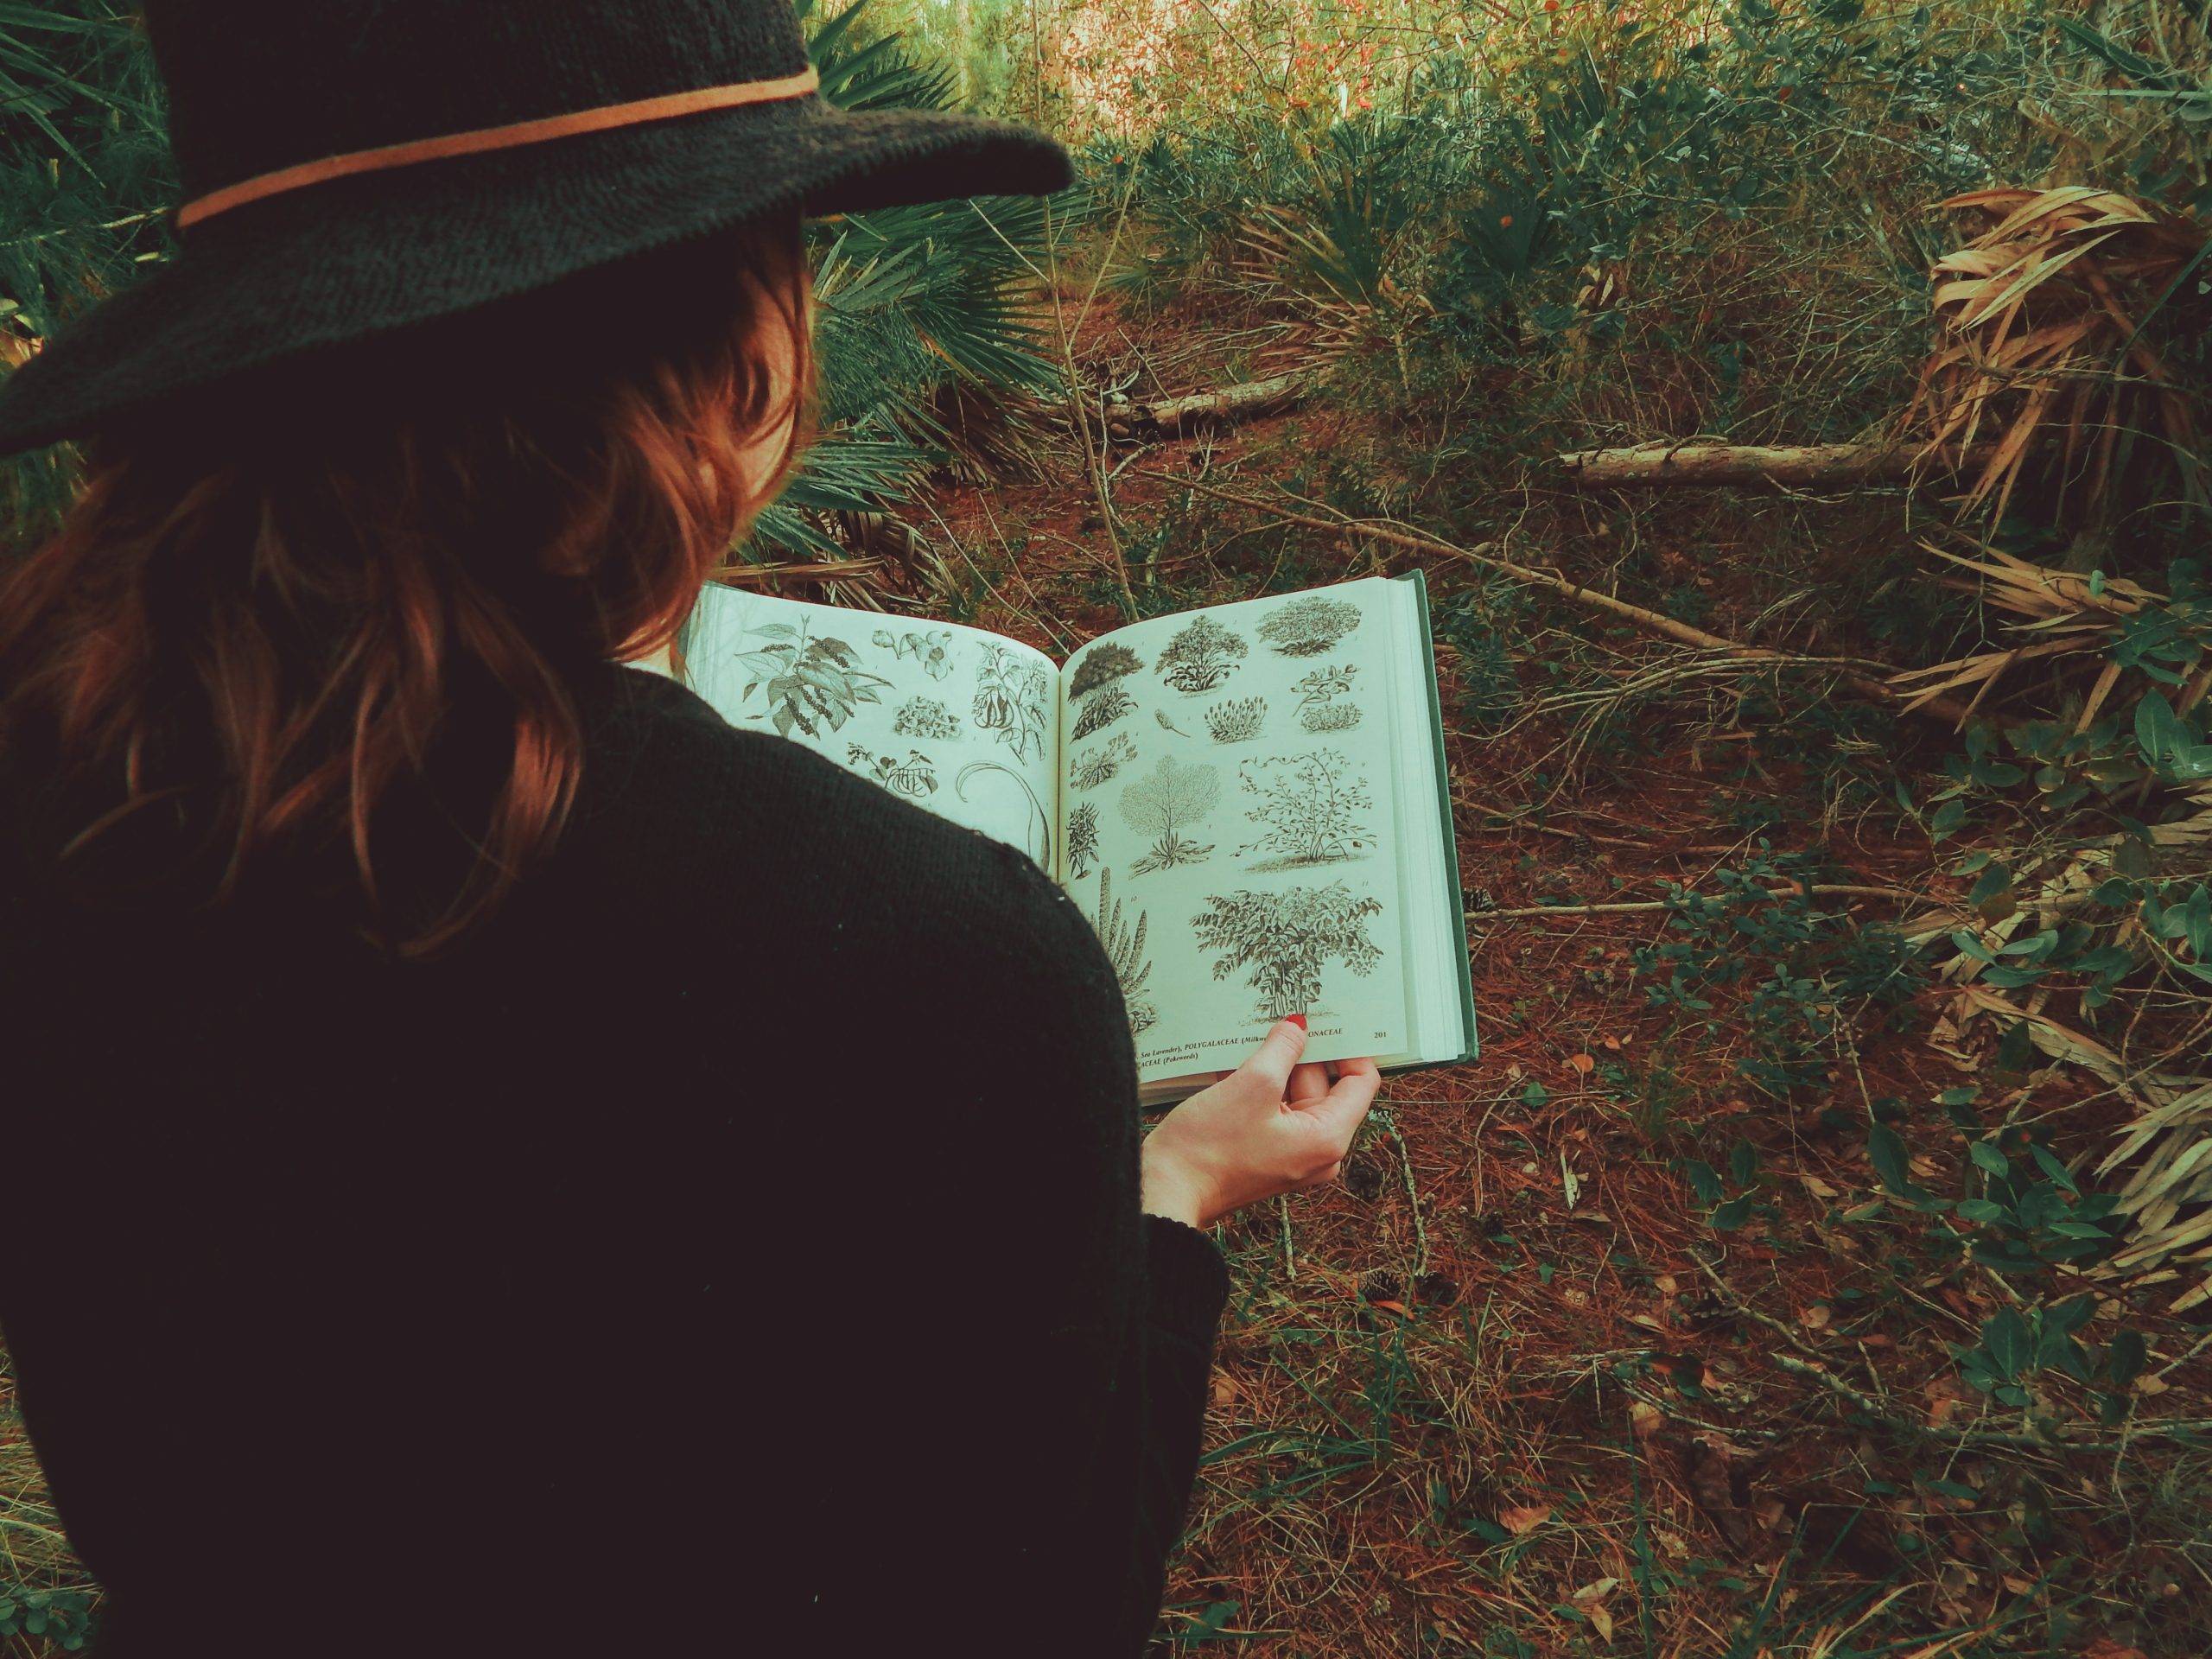 Kvinna med svart hatt tittar i en örtbok i naturen. Bilden är tagen bakifrån kvinnans rygg och över hennes axlar på örtboken där kvinnan tittar ner. Hon har utsläppt rödbrunt hår och står i naturen.